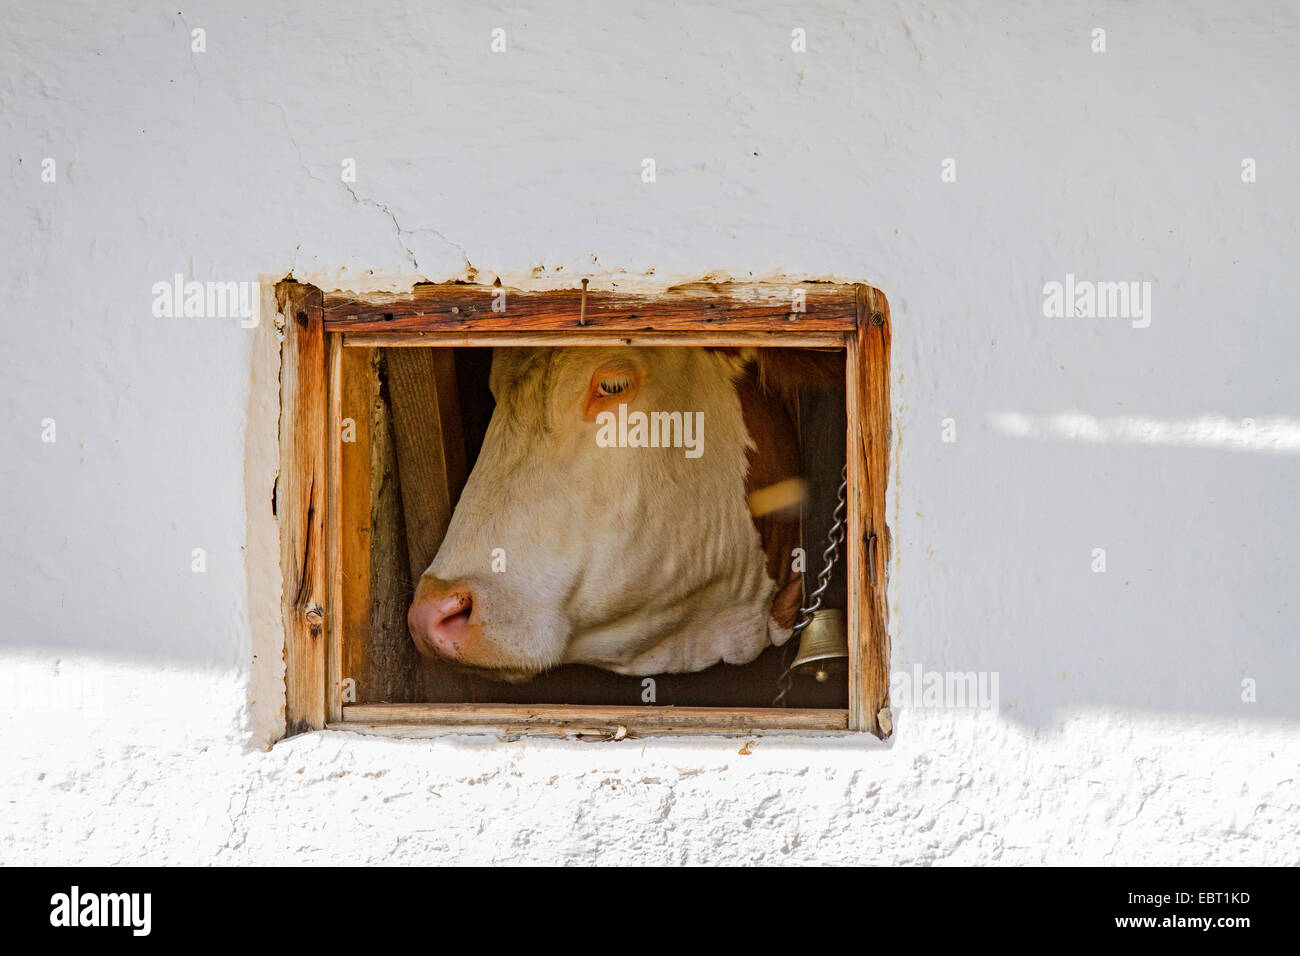 El ganado doméstico (Bos primigenius f. taurus), con el cencerro, mirando por una ventana estable, Alemania Foto de stock